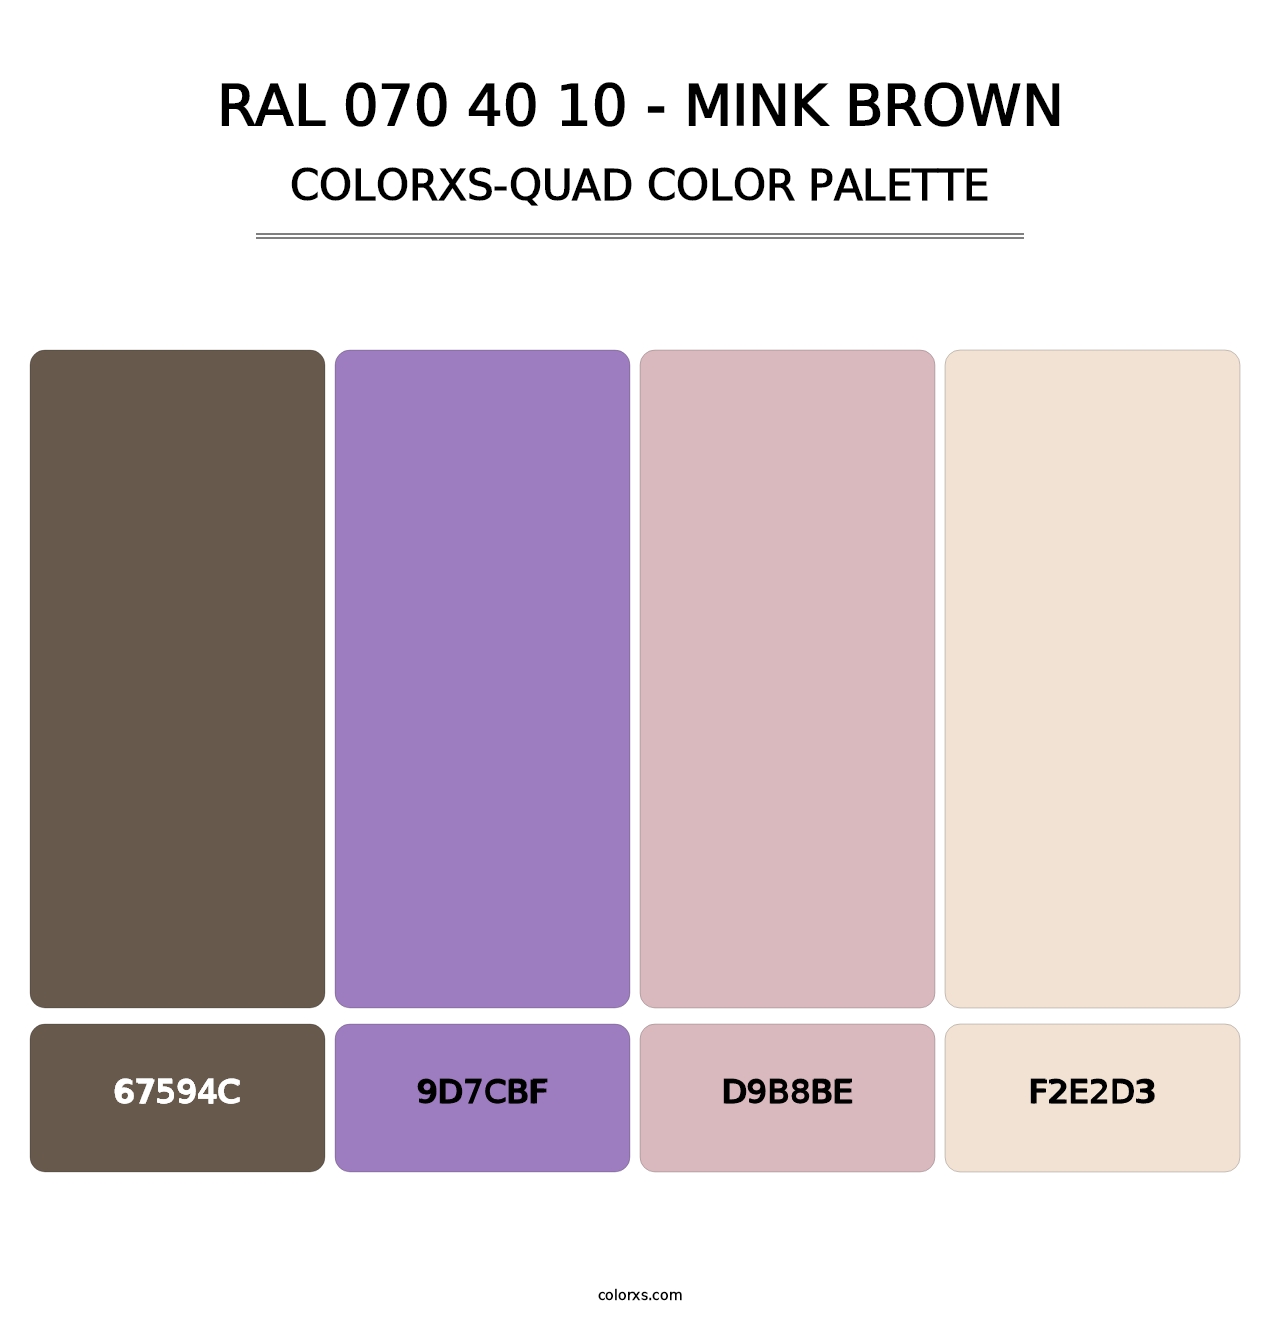 RAL 070 40 10 - Mink Brown - Colorxs Quad Palette